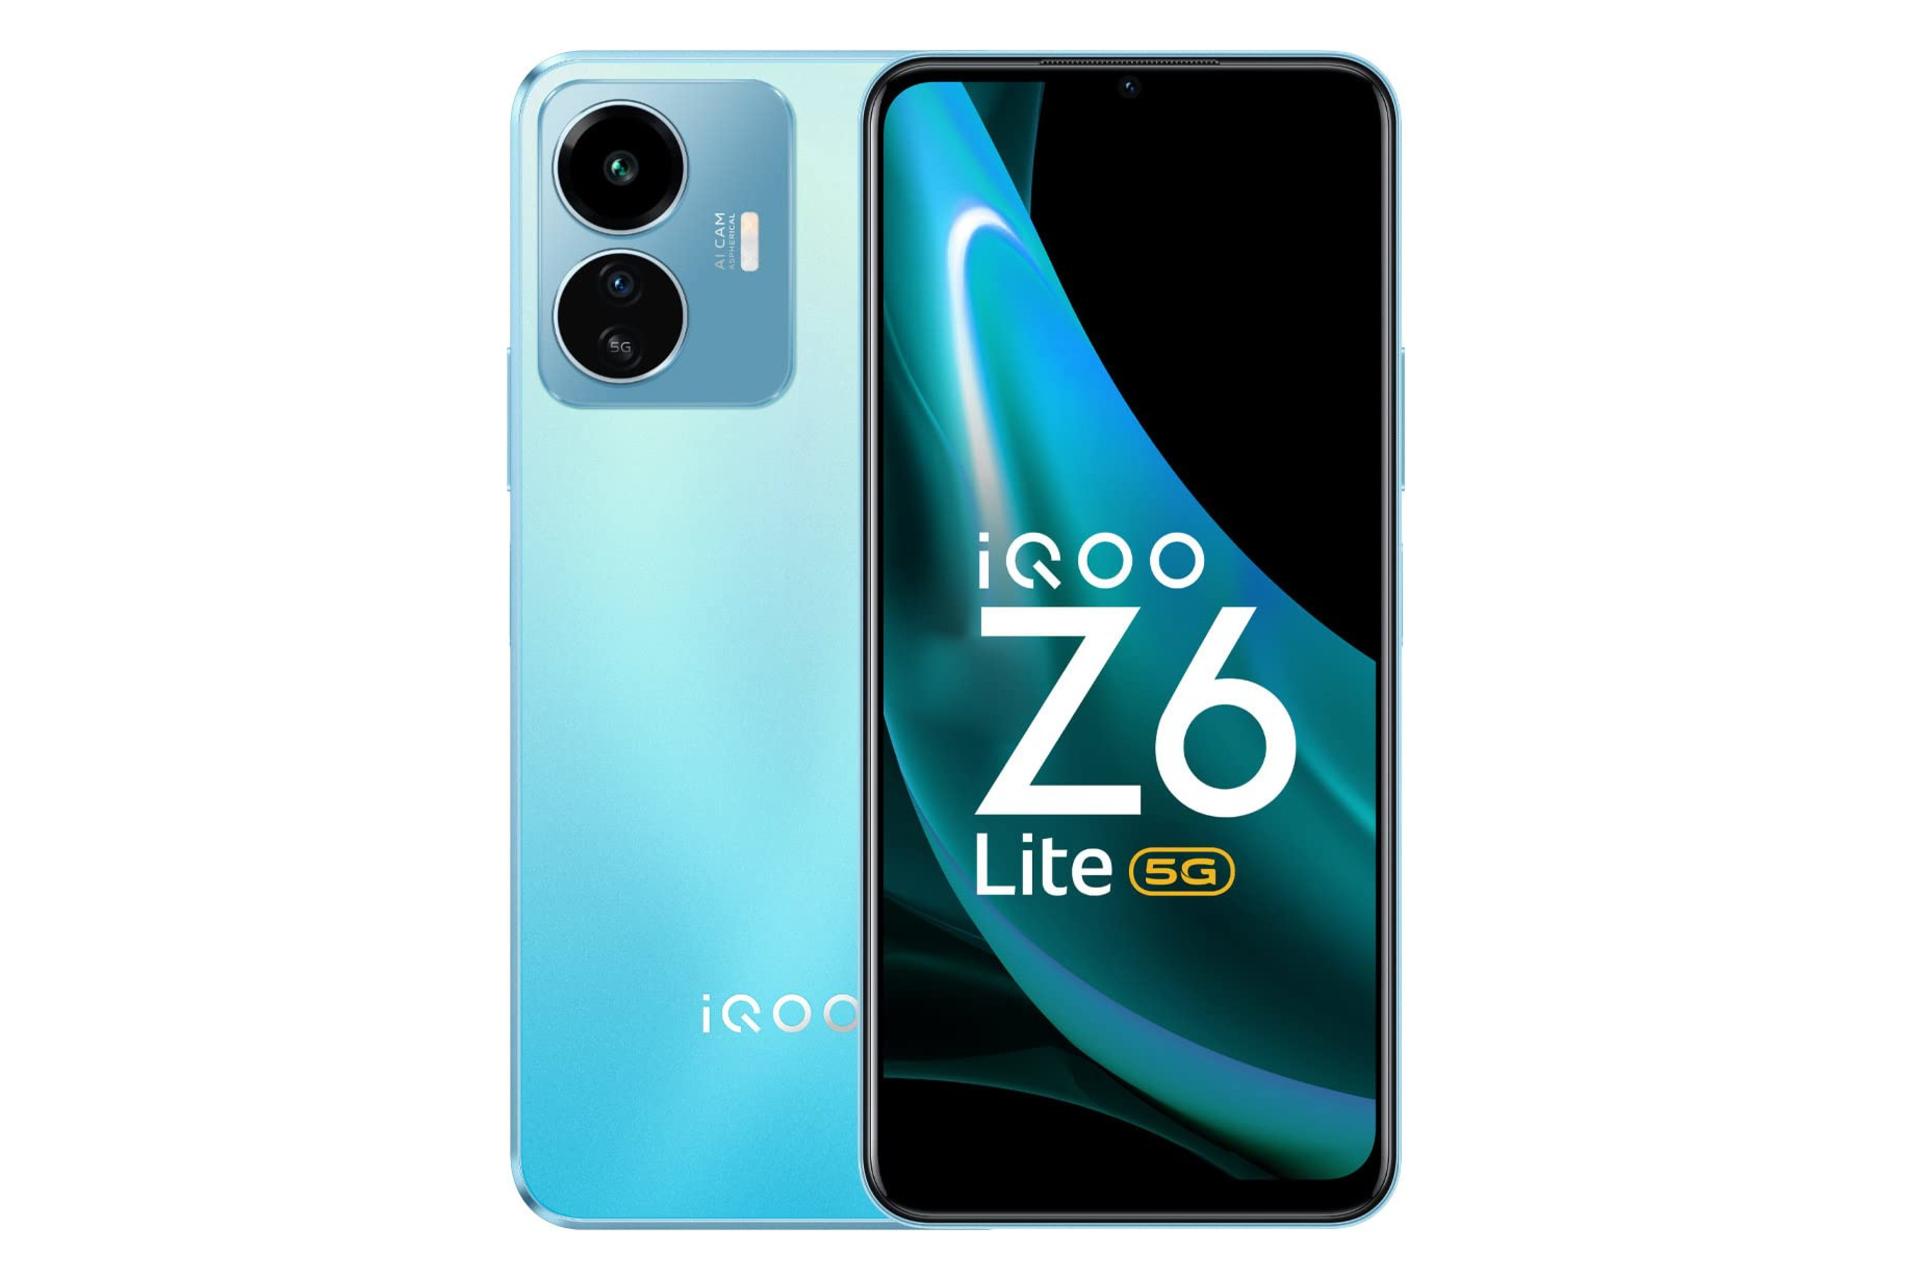 گوشی موبایل iQOO Z6 لایت ویوو / vivo iQOO Z6 Lite گرادیانی آبی و سبز